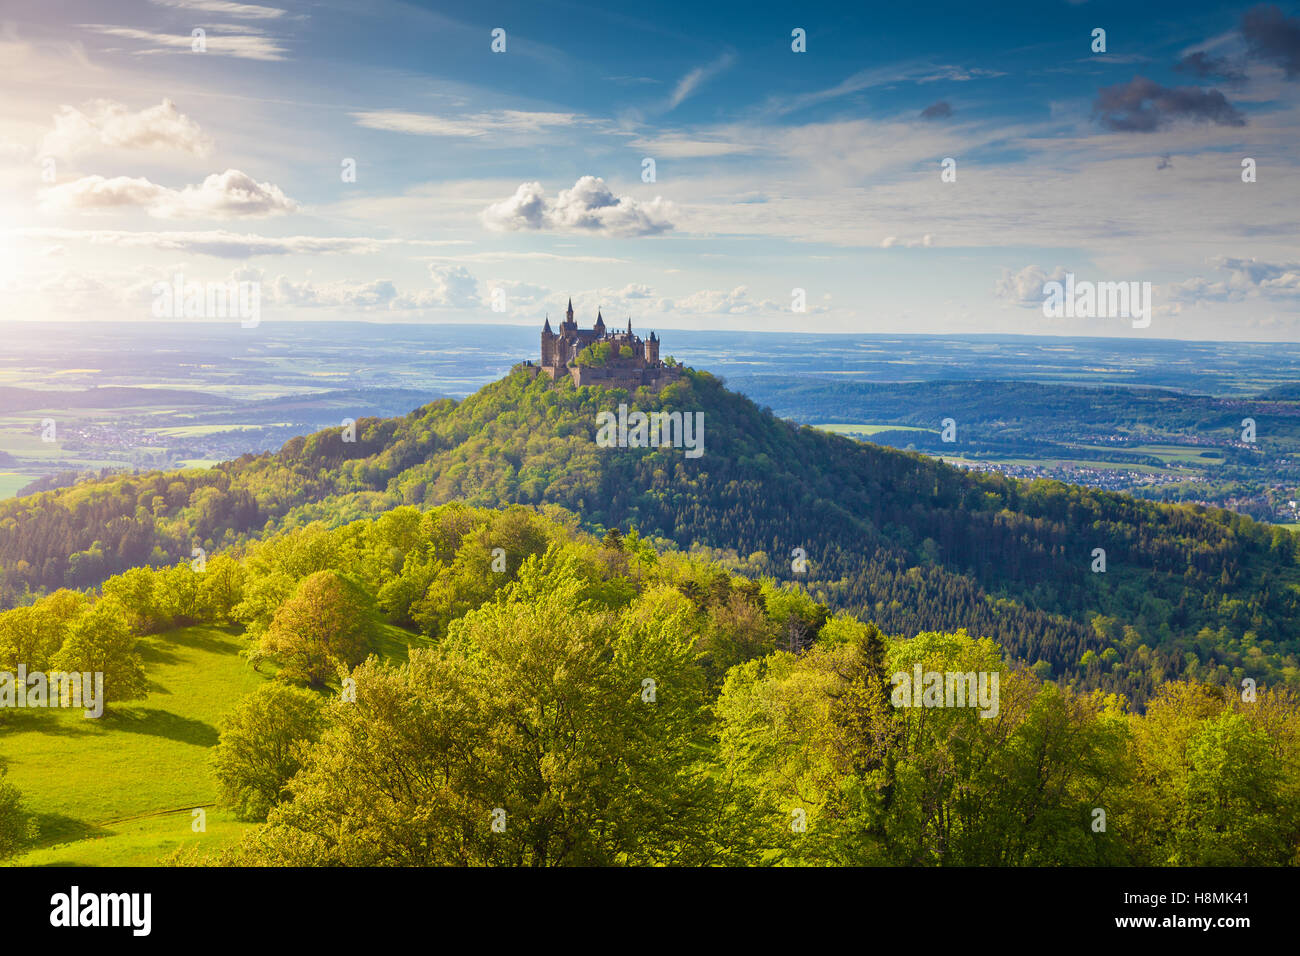 Vista aerea del famoso Castello Hohenzollern, sede ancestrale della casa imperiale degli Hohenzollern e uno d'Europa più visitato castelli al tramonto Foto Stock